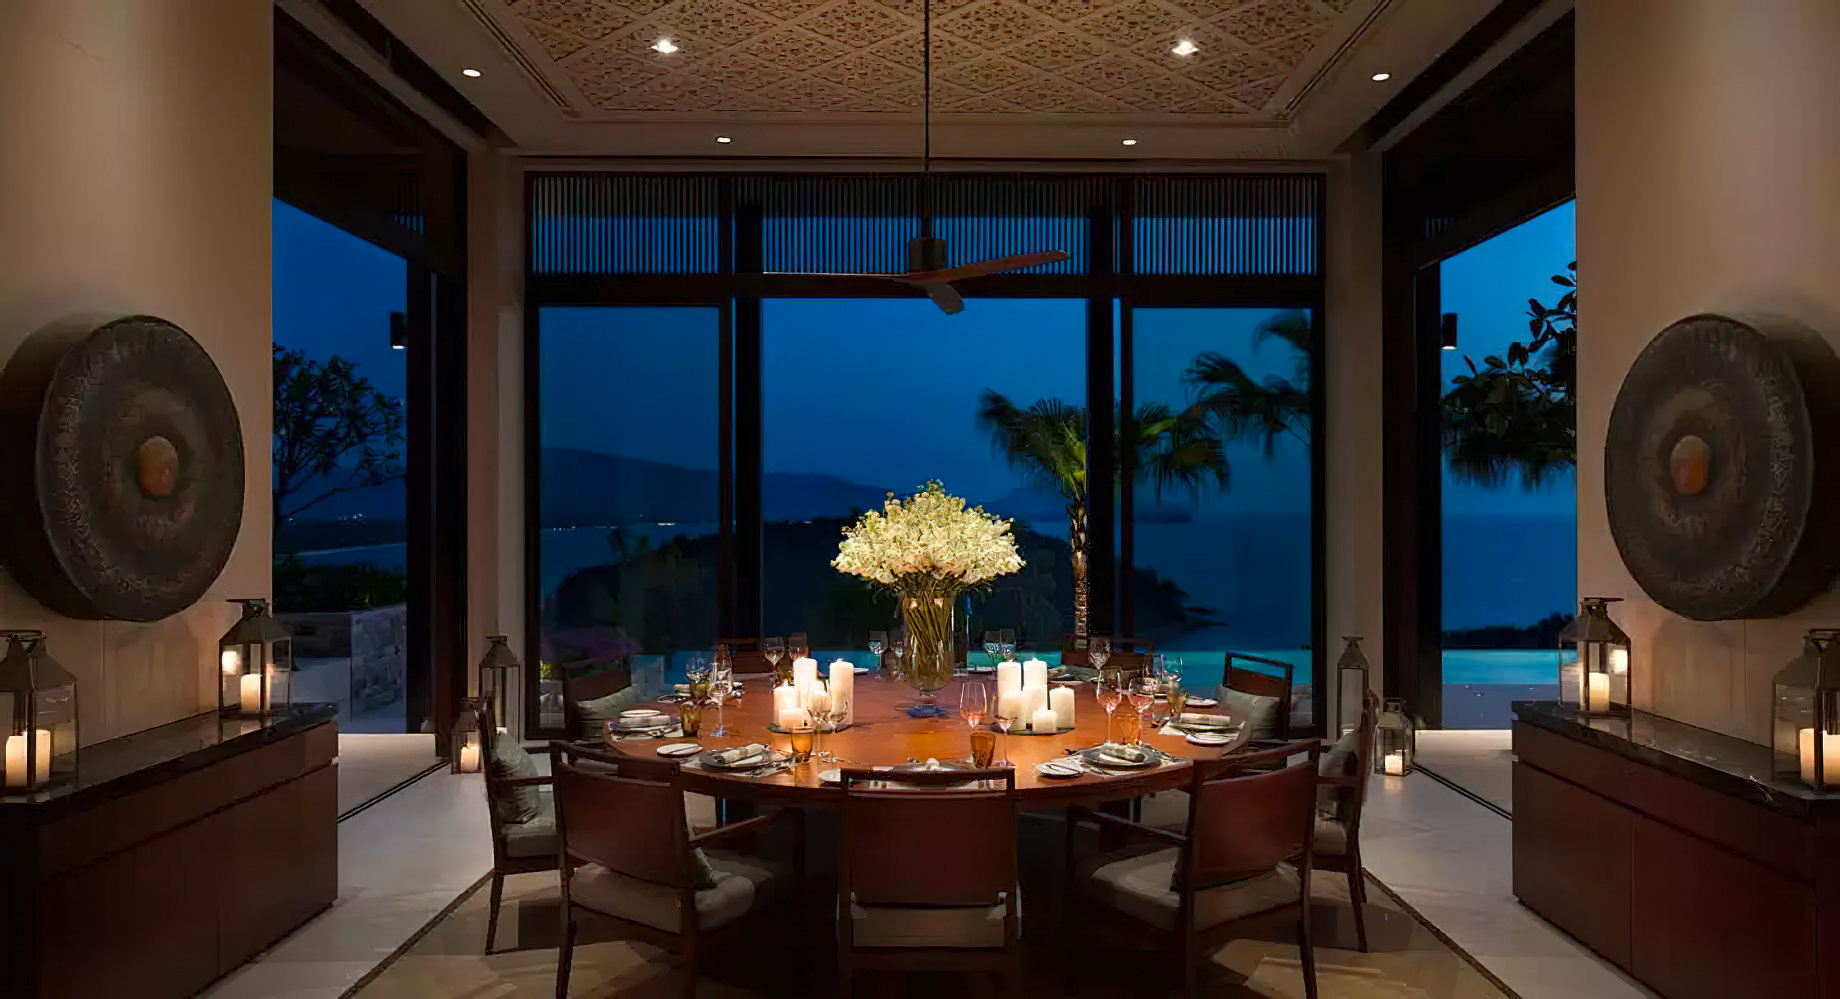 Anantara Layan Phuket Resort & Residences – Thailand – Residence Dining Room